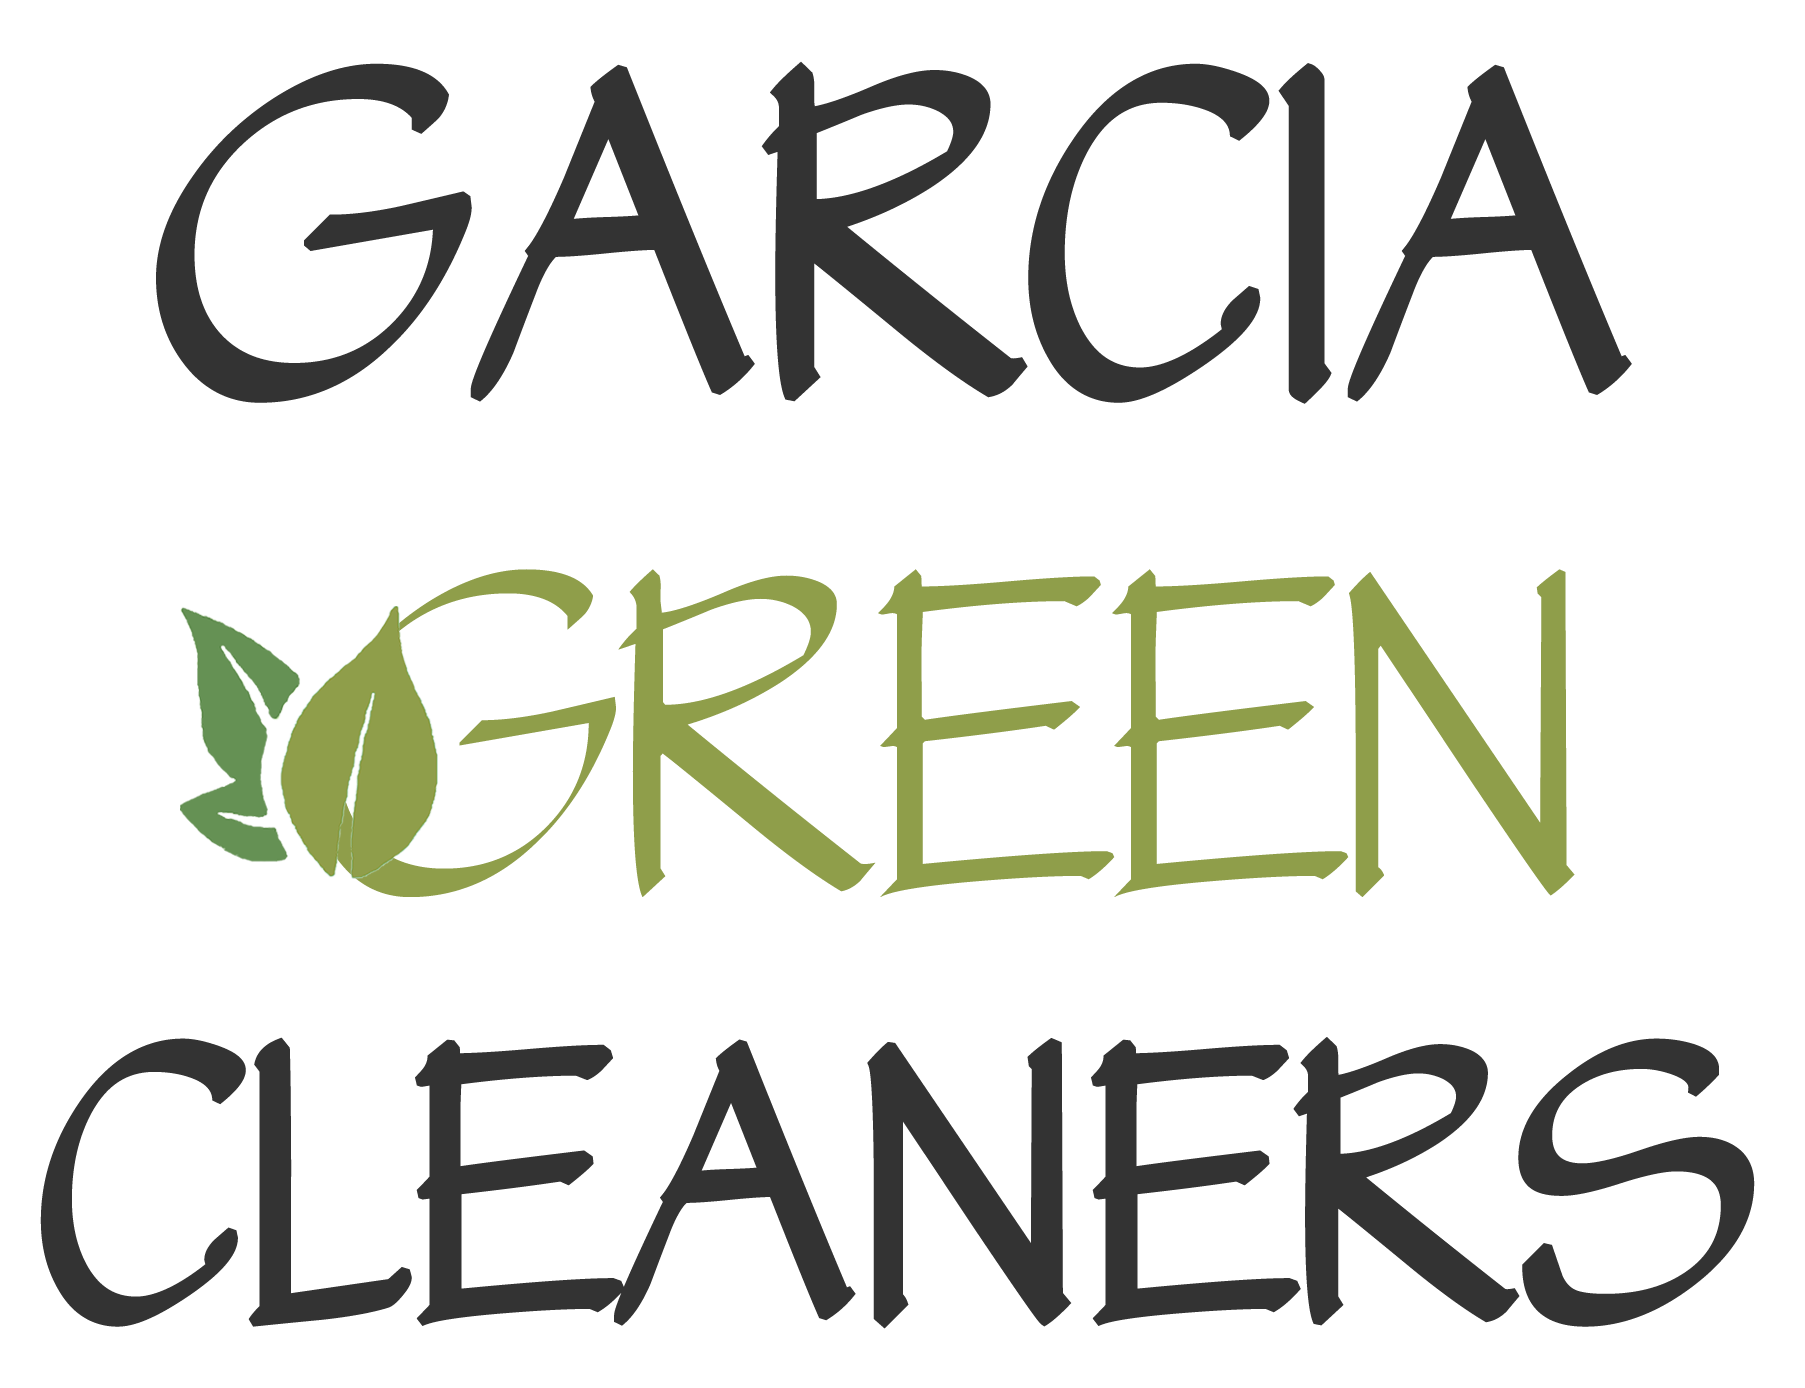 Garcia Green Cleaners Logo